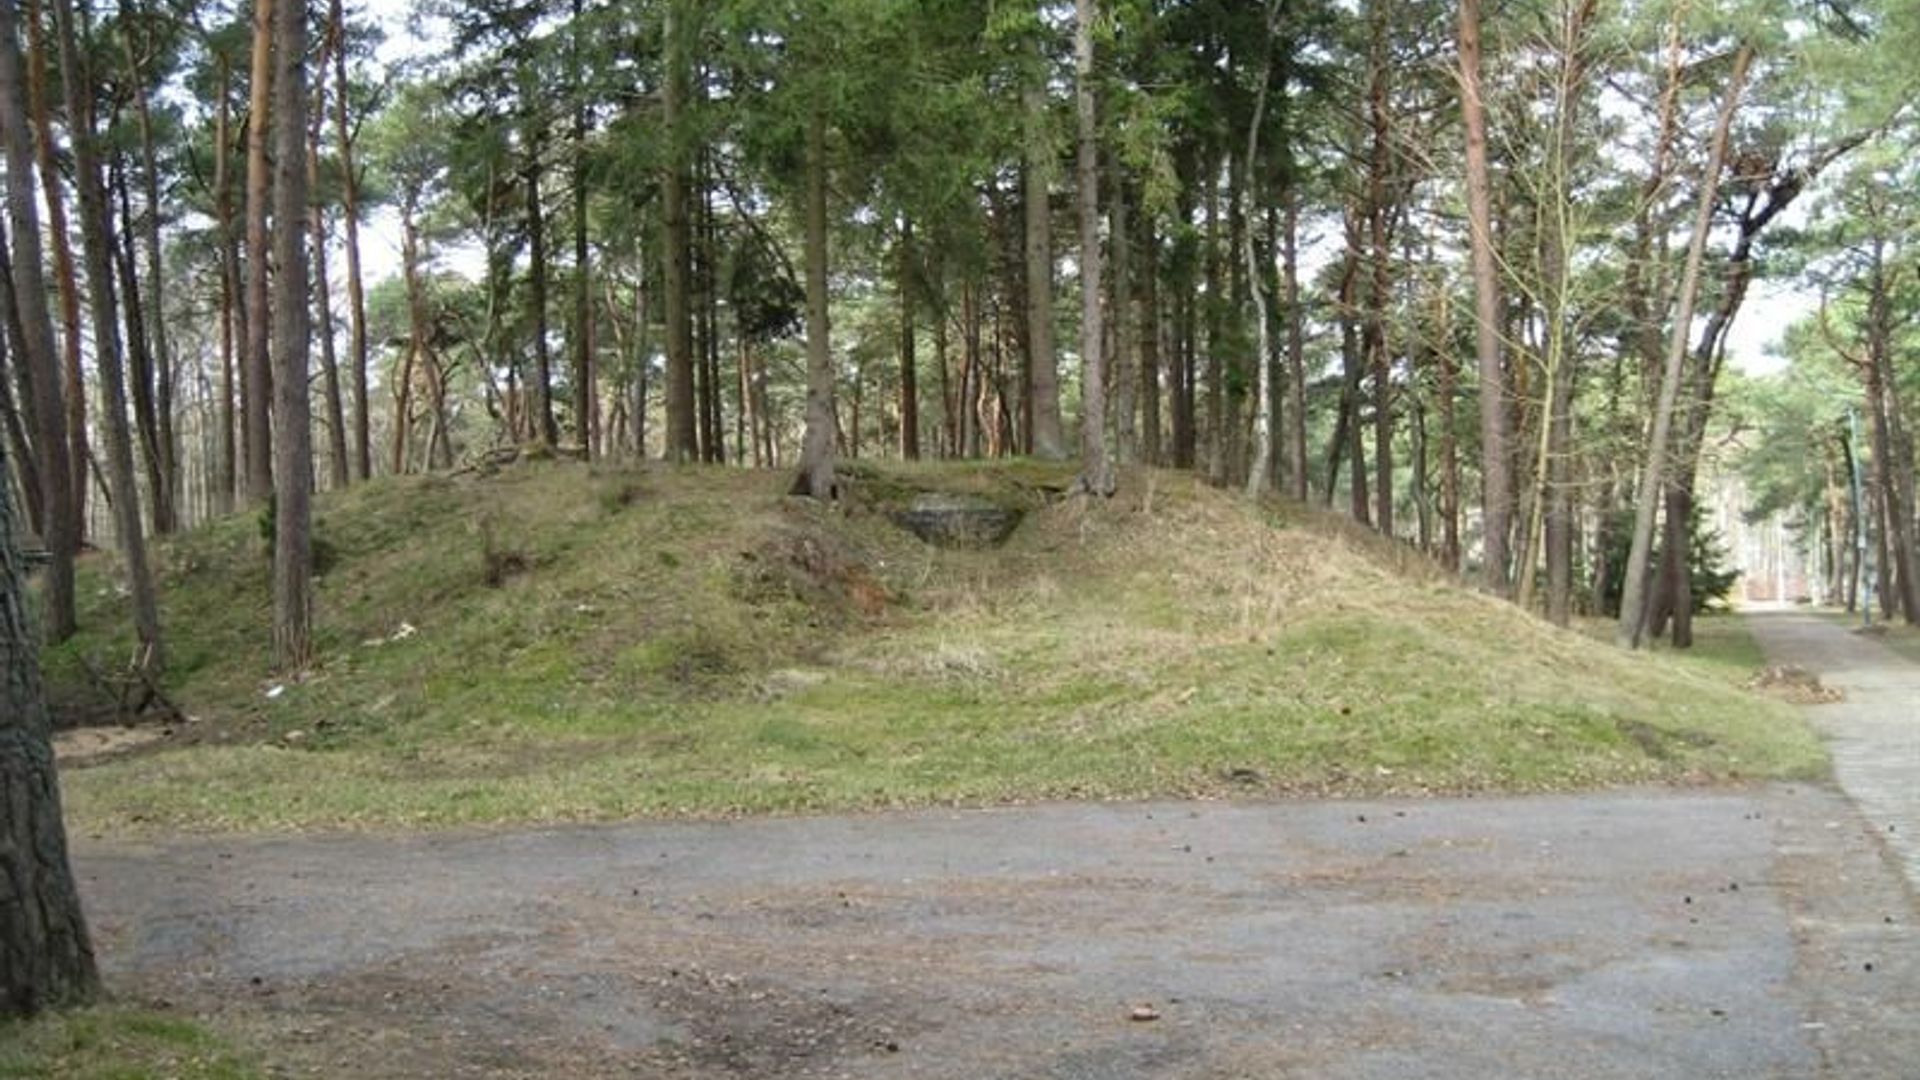 Kukuliškės Bunker